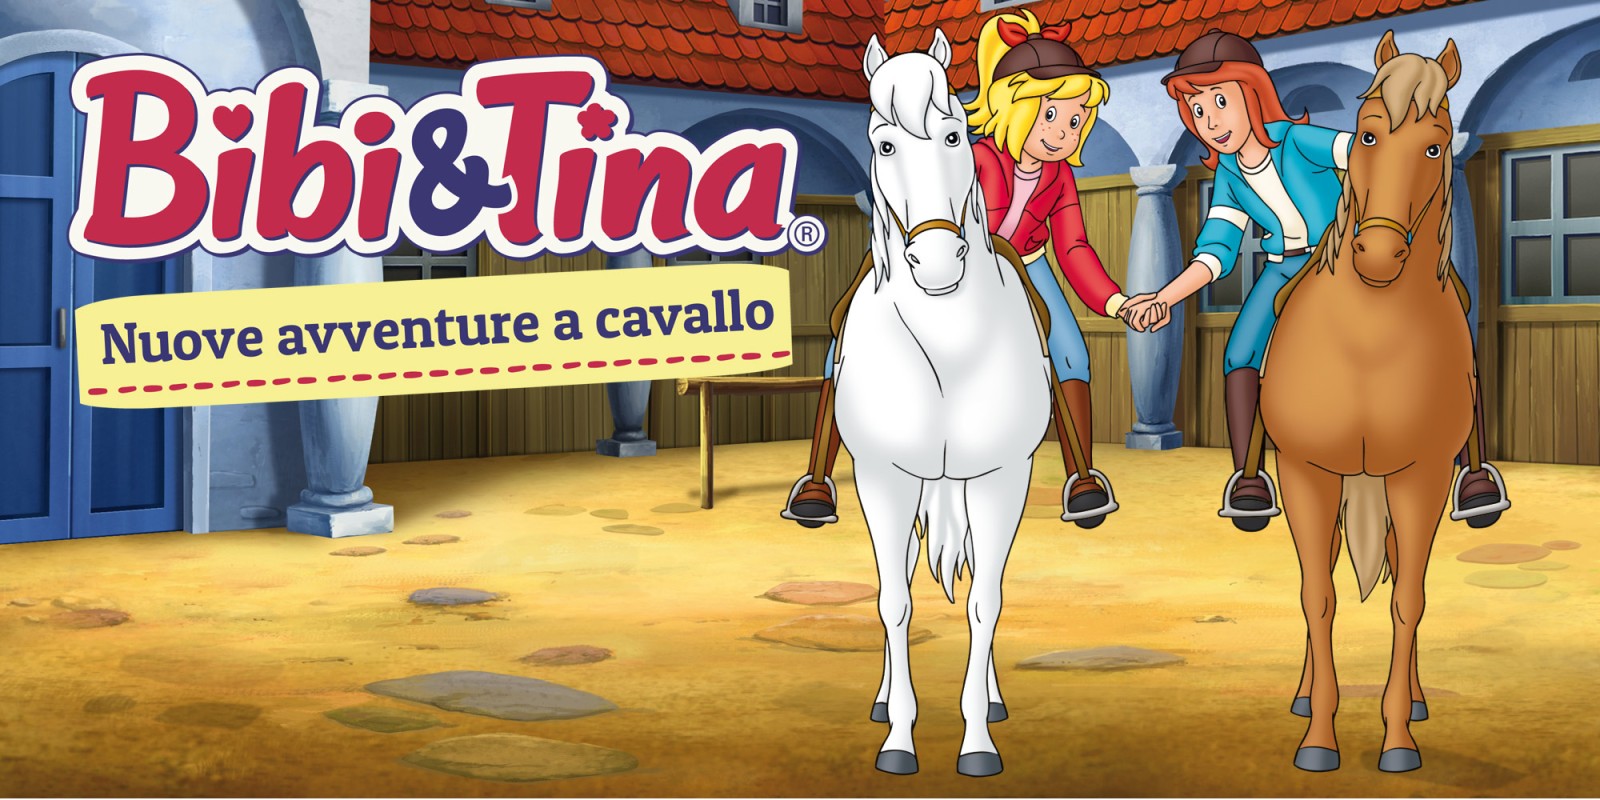 Bibi & Tina – Nuove avventure a cavallo